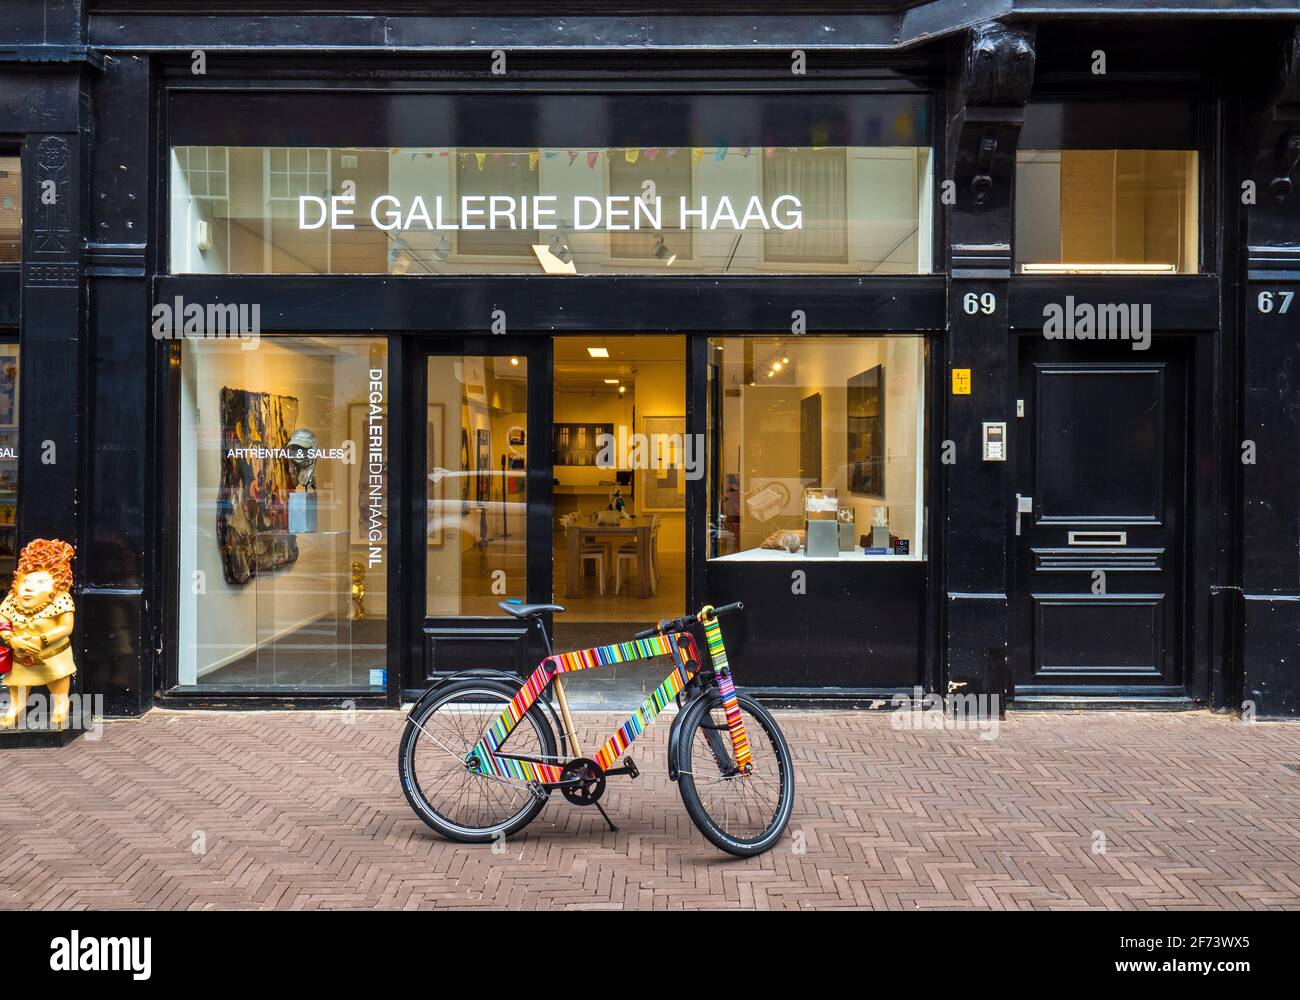 De Galerie Den Haag en Noordeinde 69-71 en Den Haag o la haya, NL. Galería de Arte Comercial y tienda especializada en arte contemporáneo moderno Foto de stock